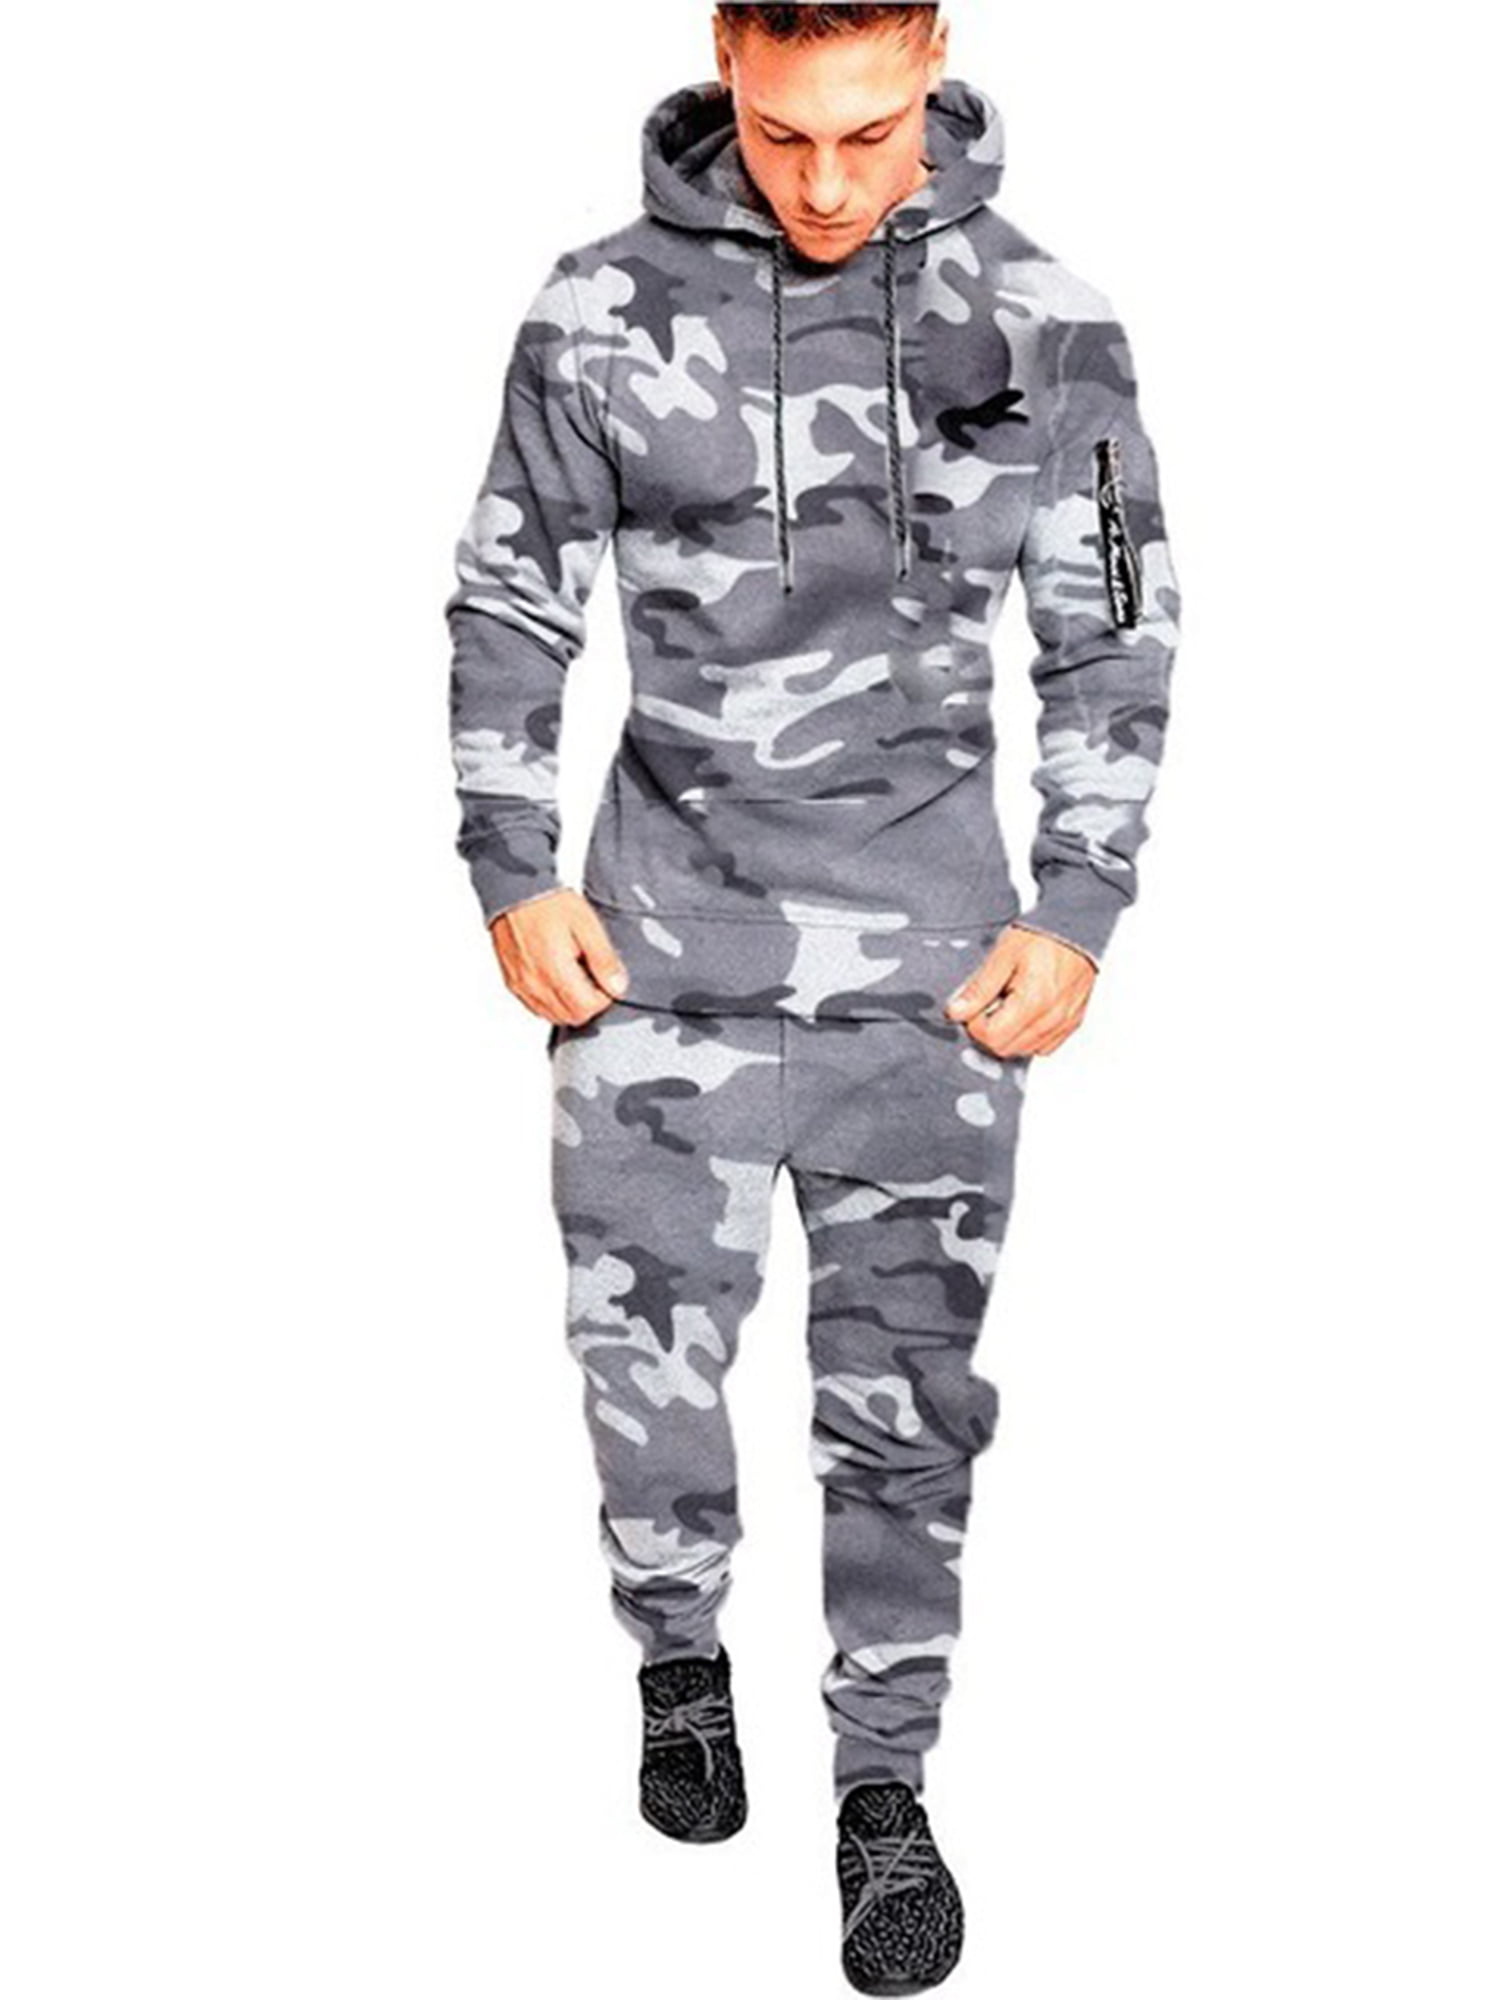 beetje erwt Industrieel Men's Hooded Onesie Jumpsuit Camouflage Sports Romper Overall Zipper  Playsuit - Walmart.com